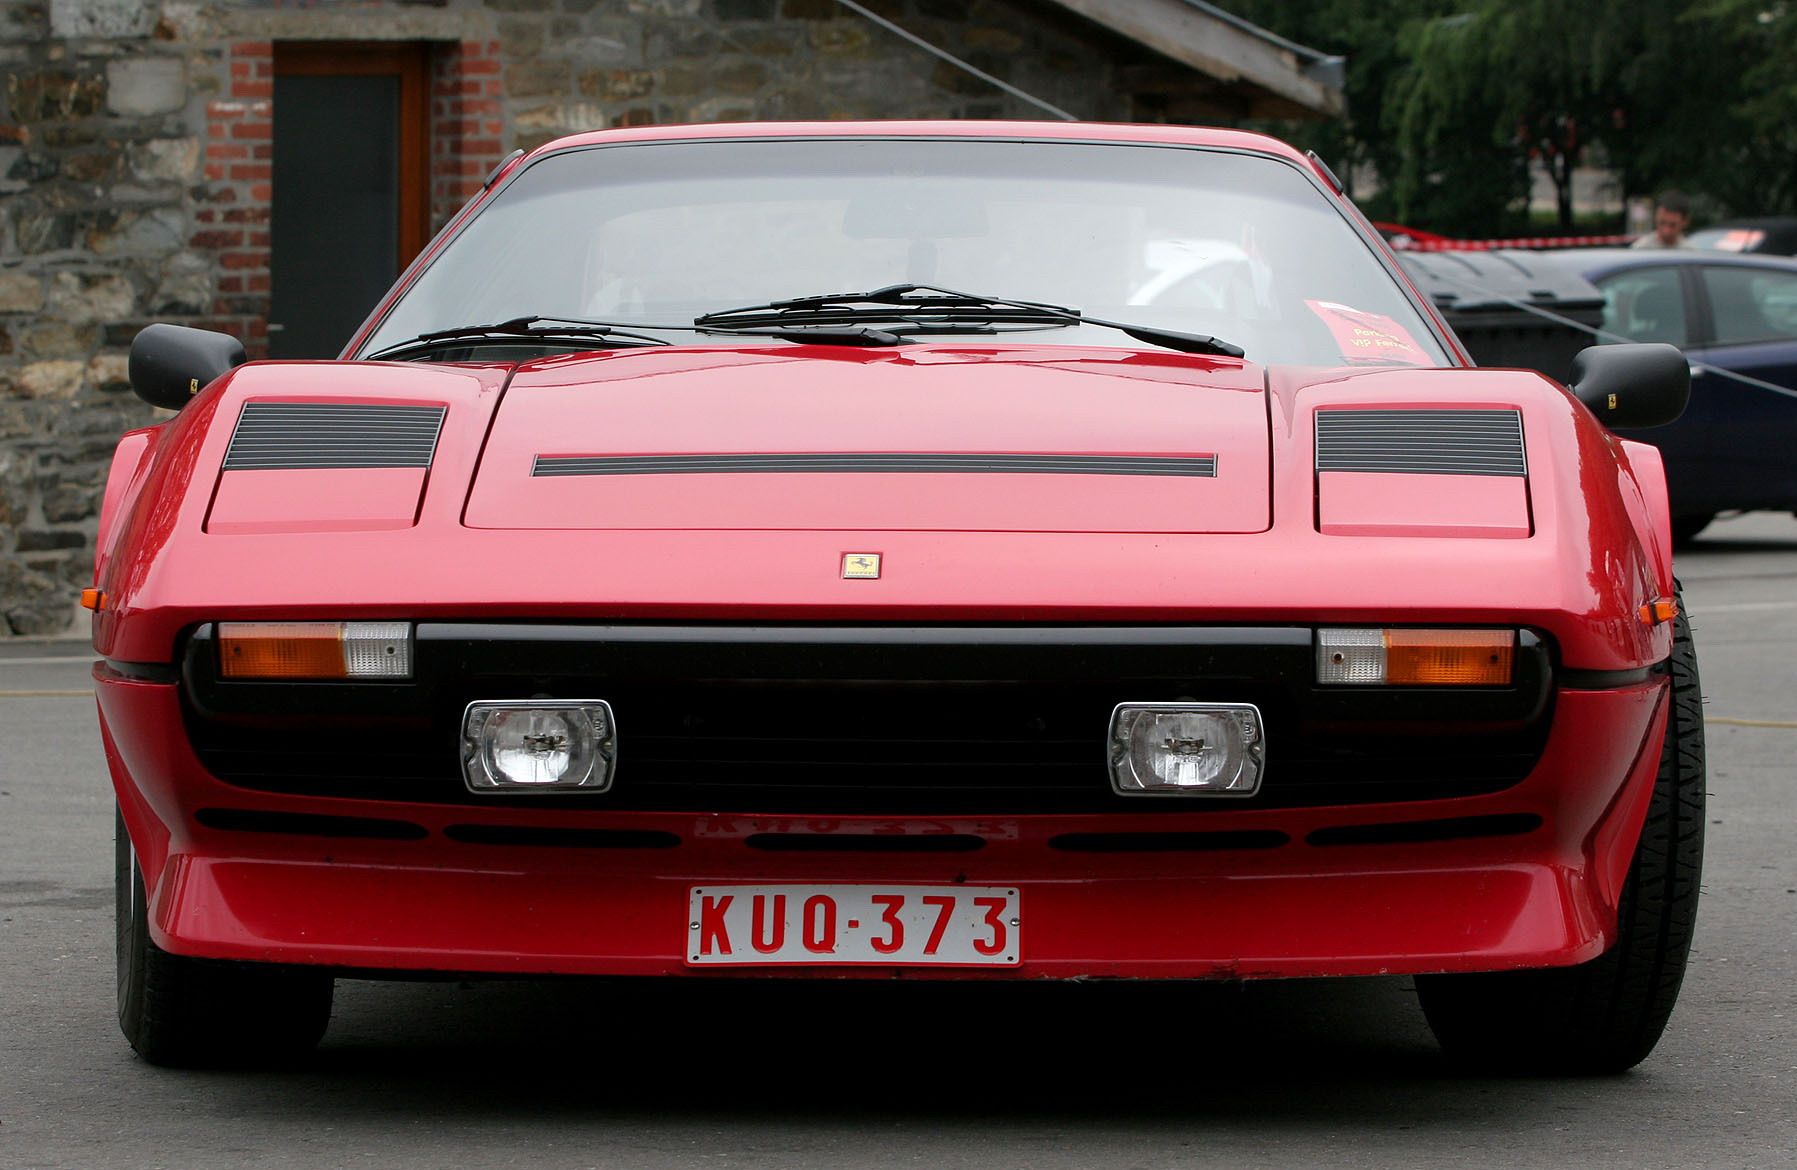 1982 - 1985 Ferrari 208 GTB Turbo